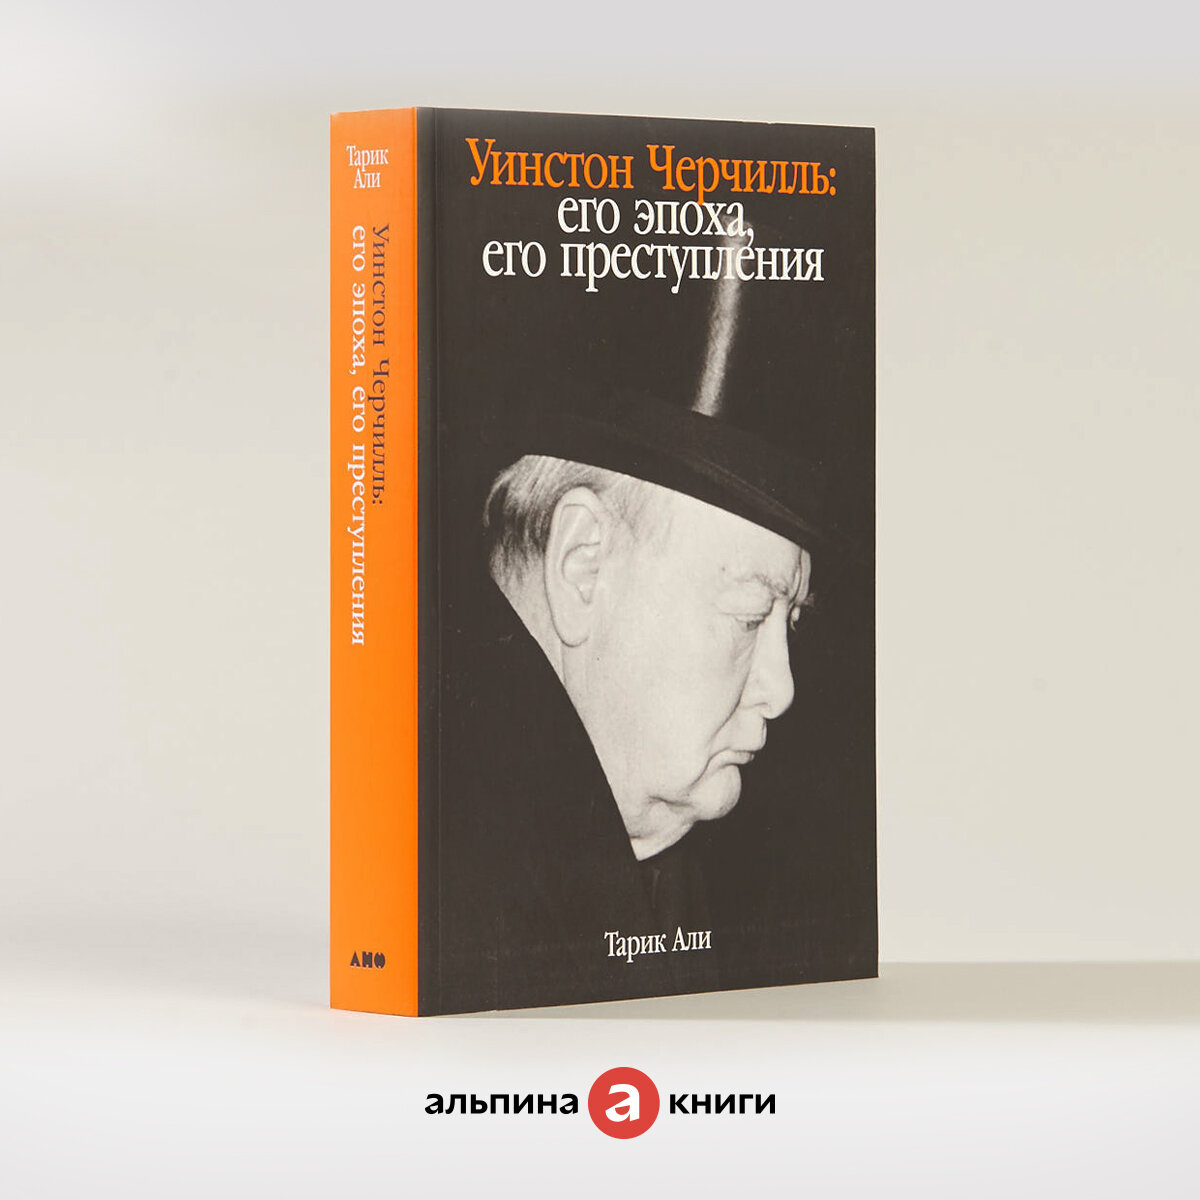 Уинстон Черчилль: Его эпоха, его преступления / Книги по истории. Публицистика / Тарик Али